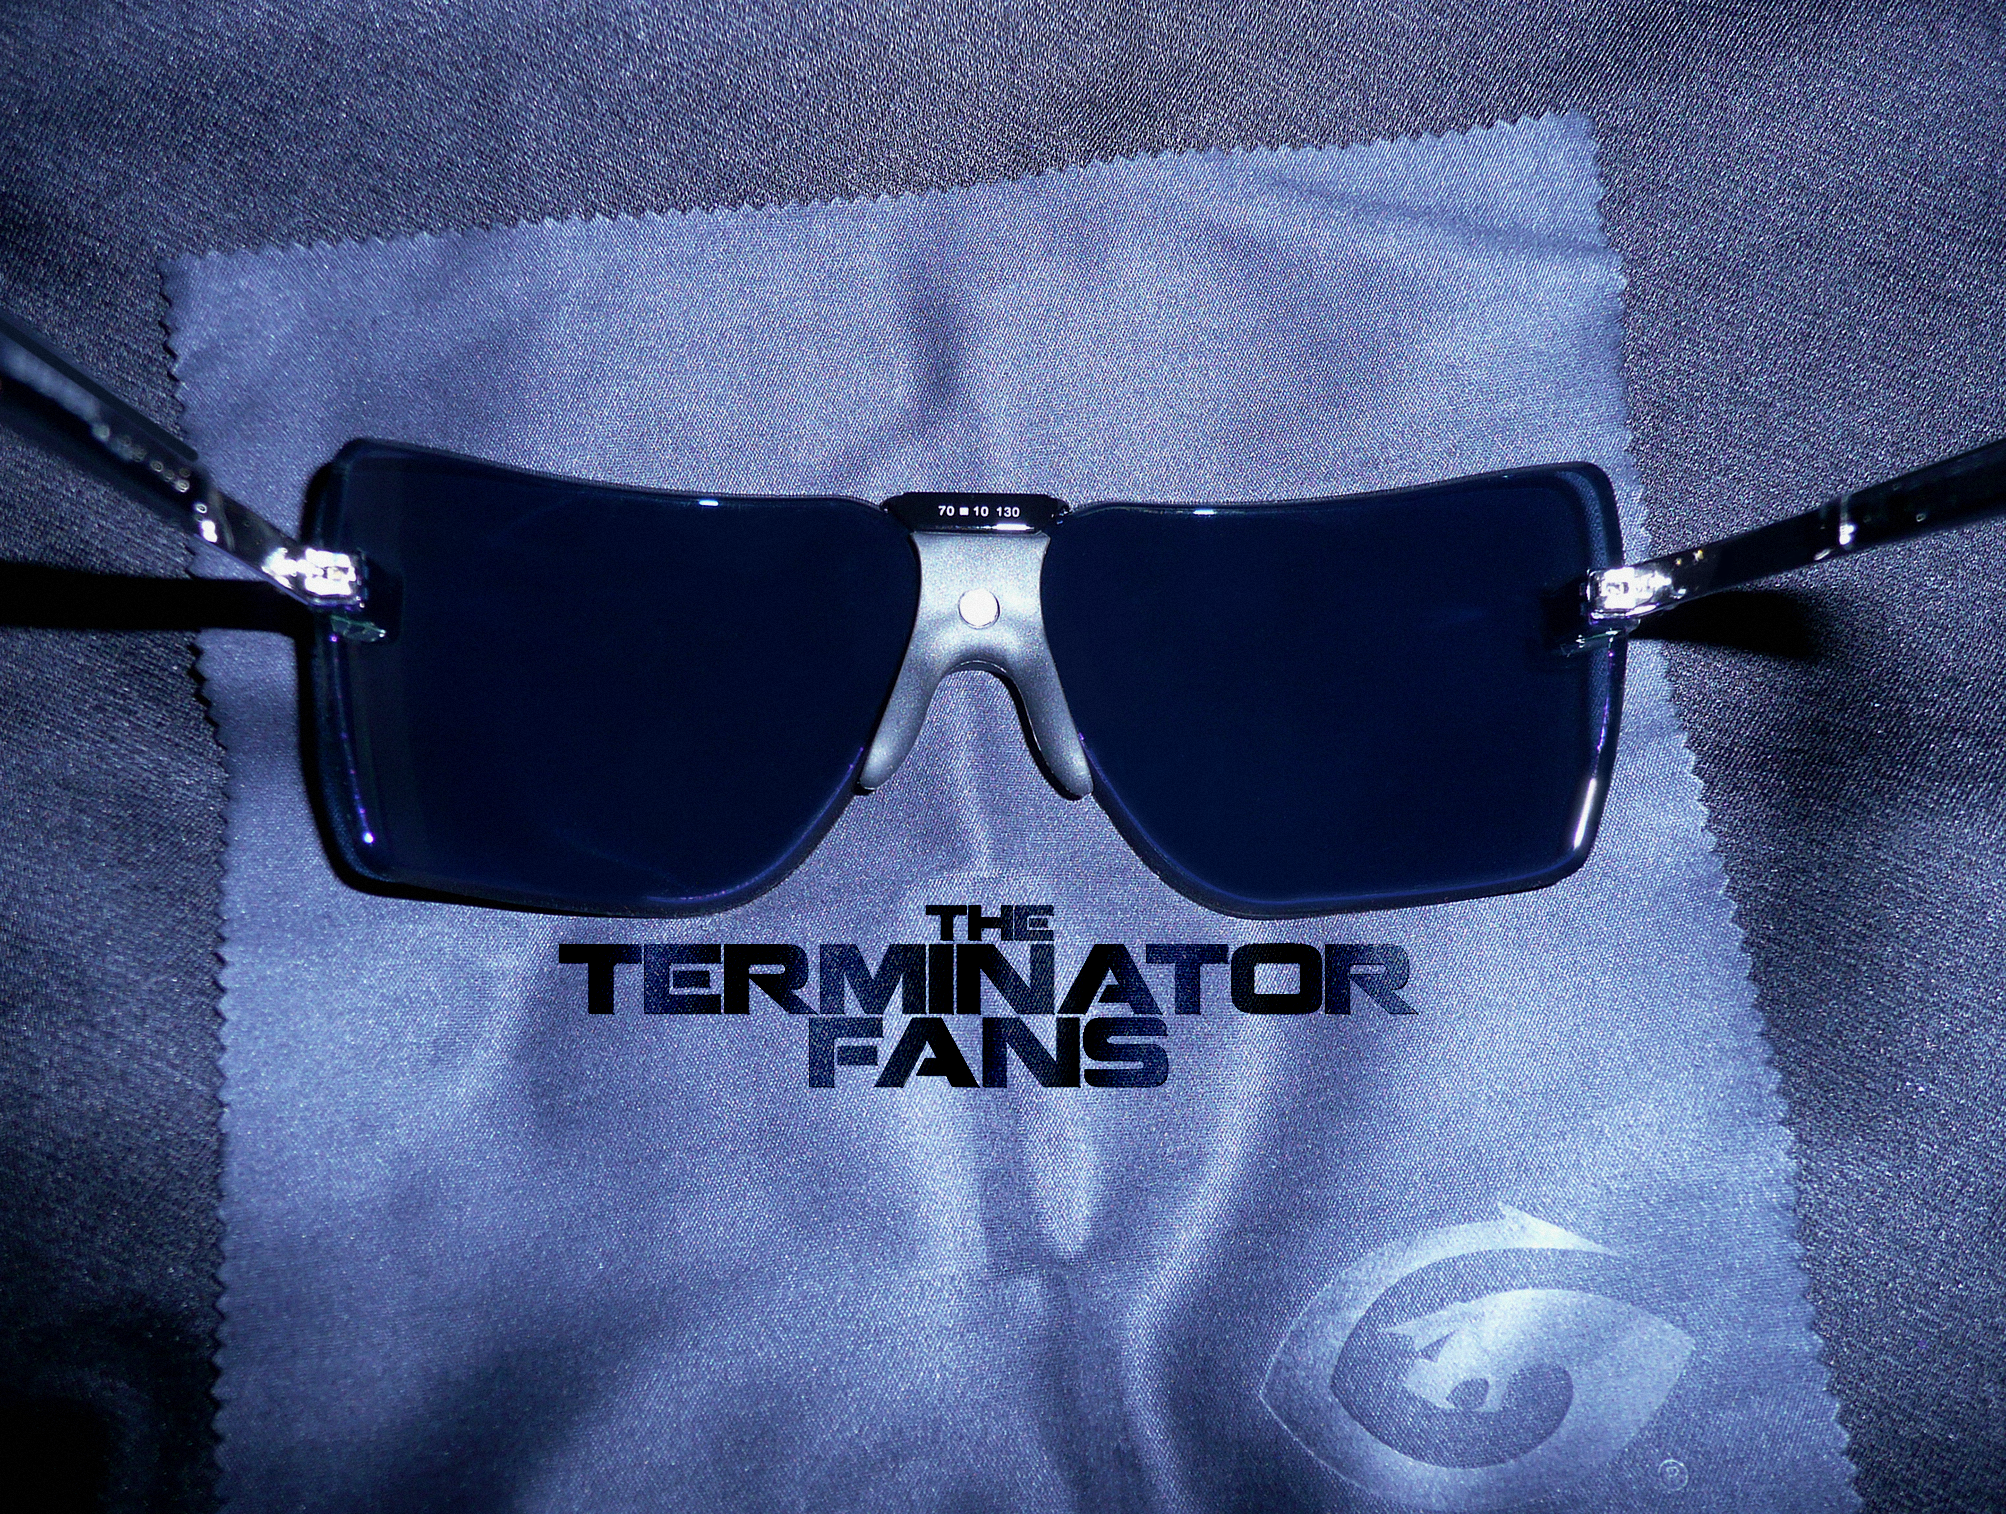 Gargoyles Classic 2015 Sunglasses Review TheTerminatorFans.com